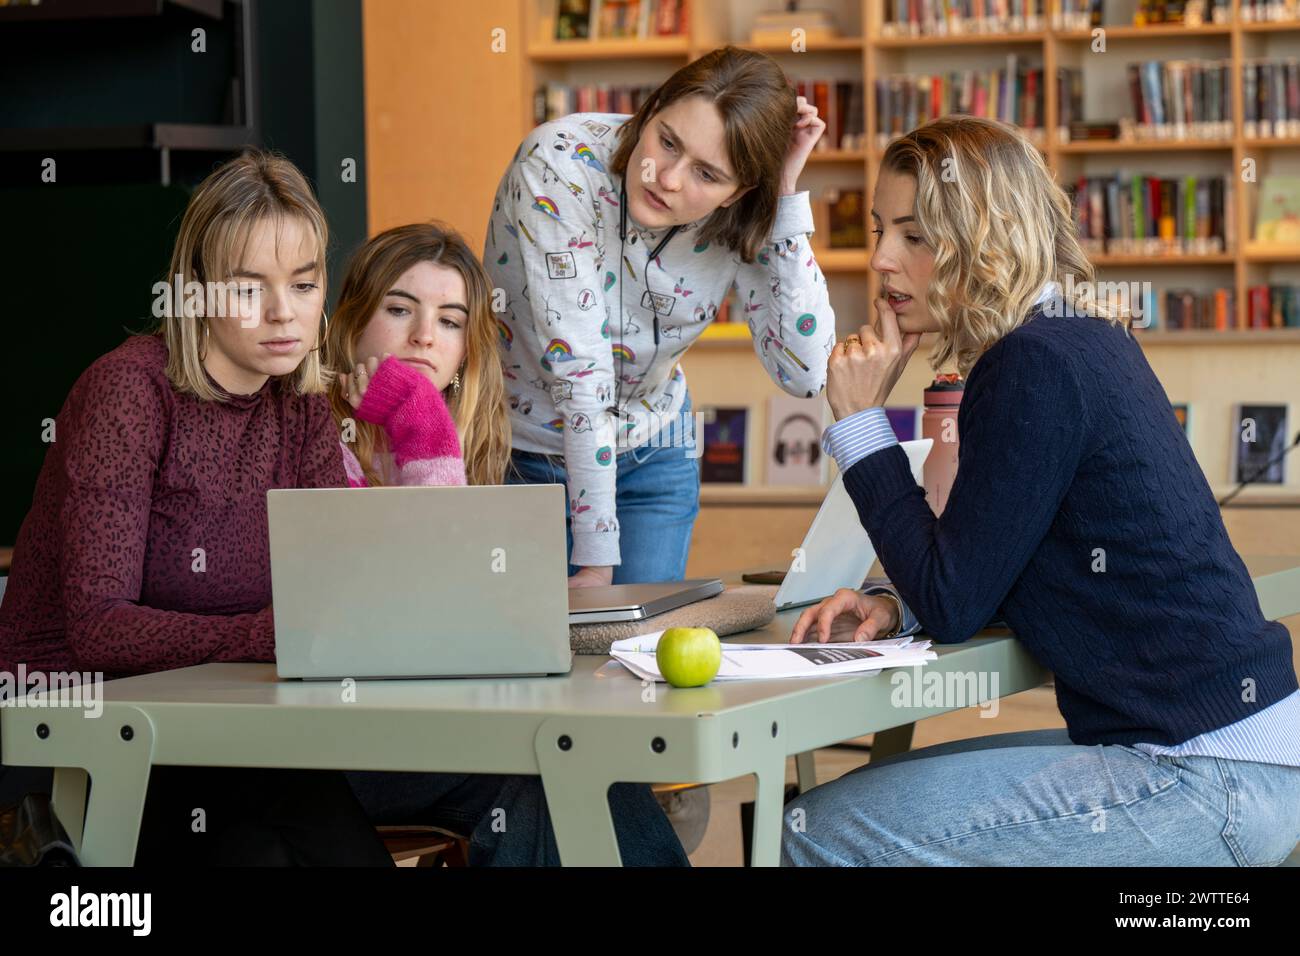 Un gruppo di quattro giovani donne si è concentrato sullo schermo di un notebook seduto a un tavolo con libri, documenti e una mela, suggerendo uno studio o una sessione di lavoro. Foto Stock